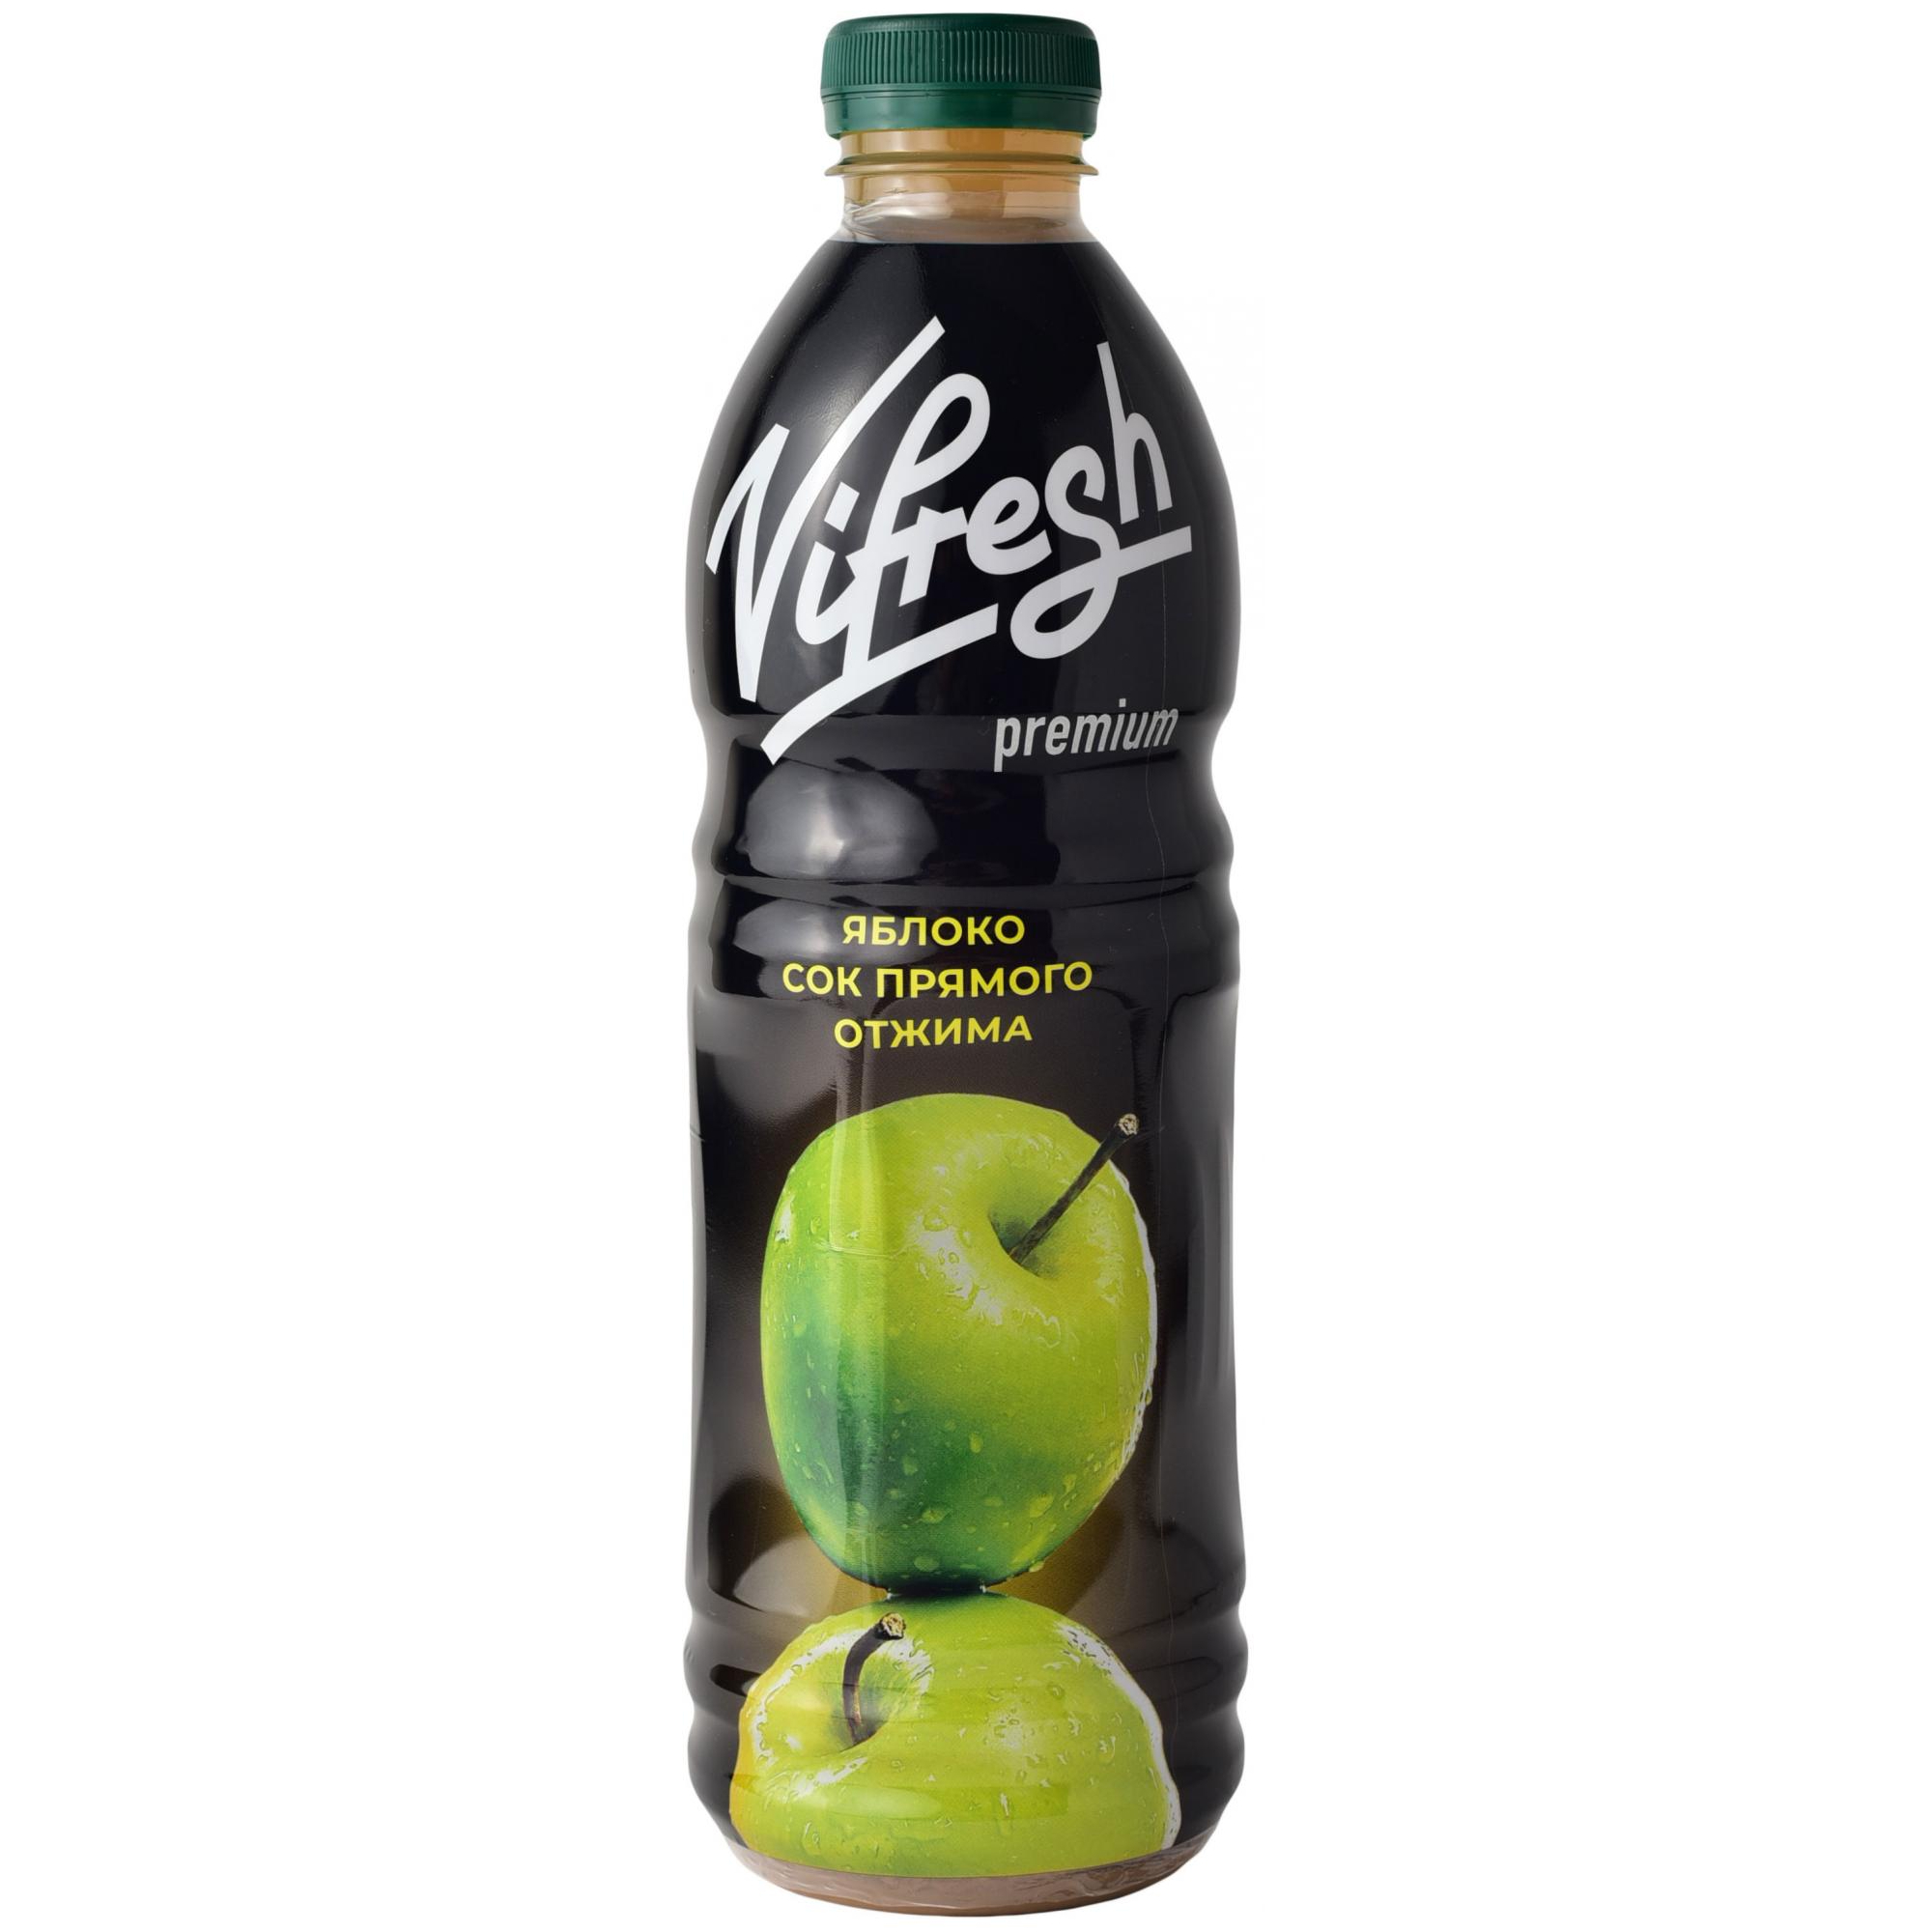 Сок Vifresh прямого отжима, Яблочный, 1 л сок сады придонья яблоко прямого отжима 1 литр